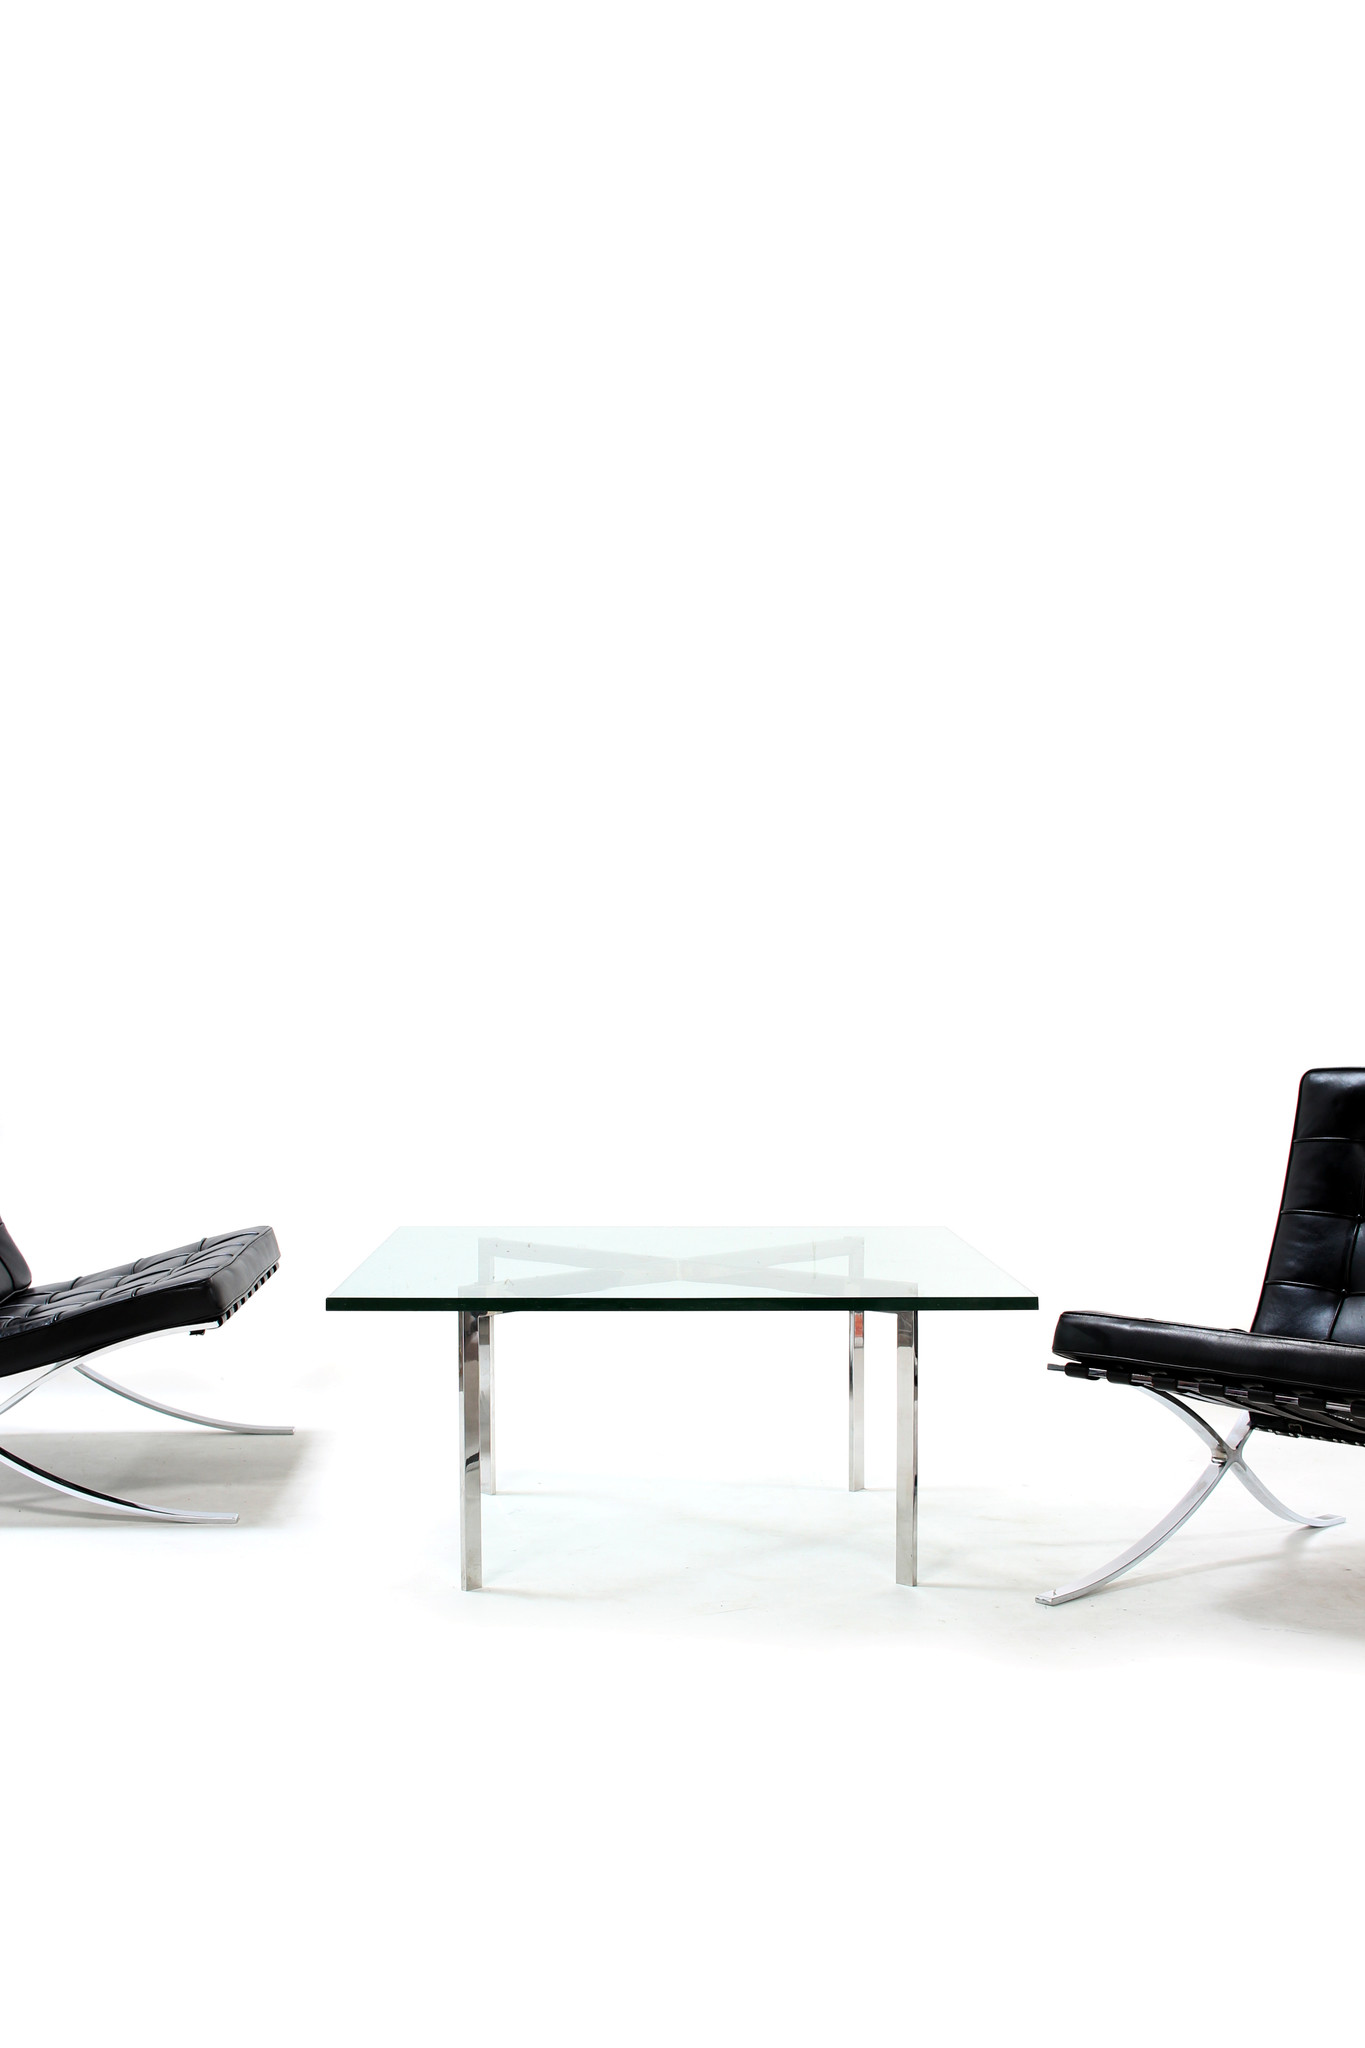 Set van 2 Barcelona Chairs voor Knoll ontworpen door Mies Van der Rohe